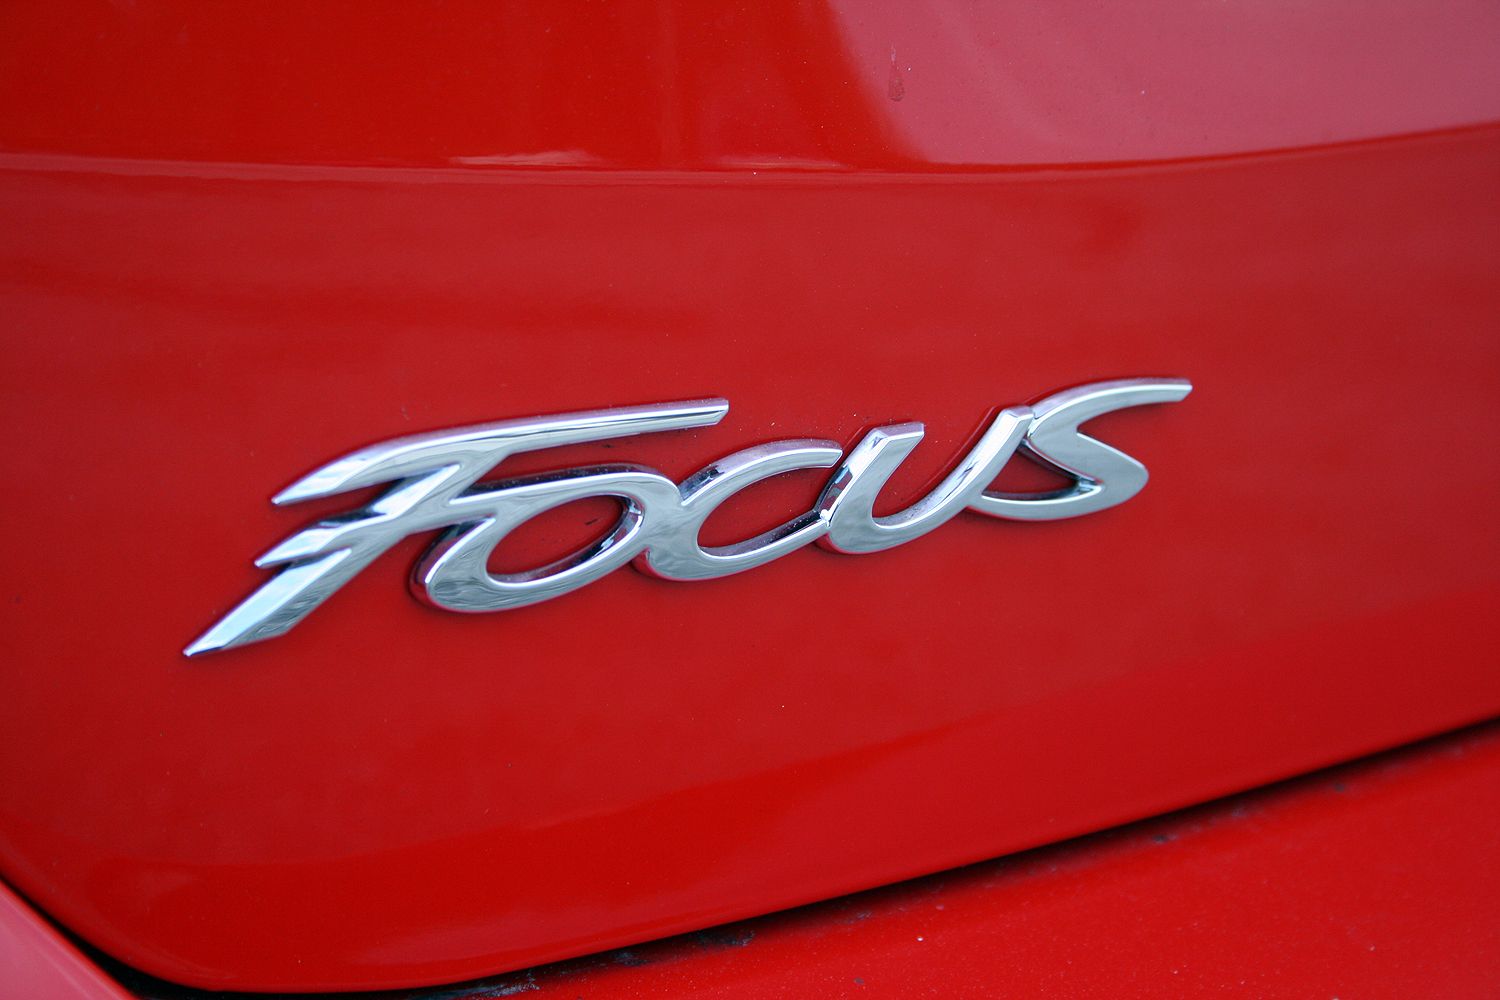 2015 Ford Focus Hatchback – Driven